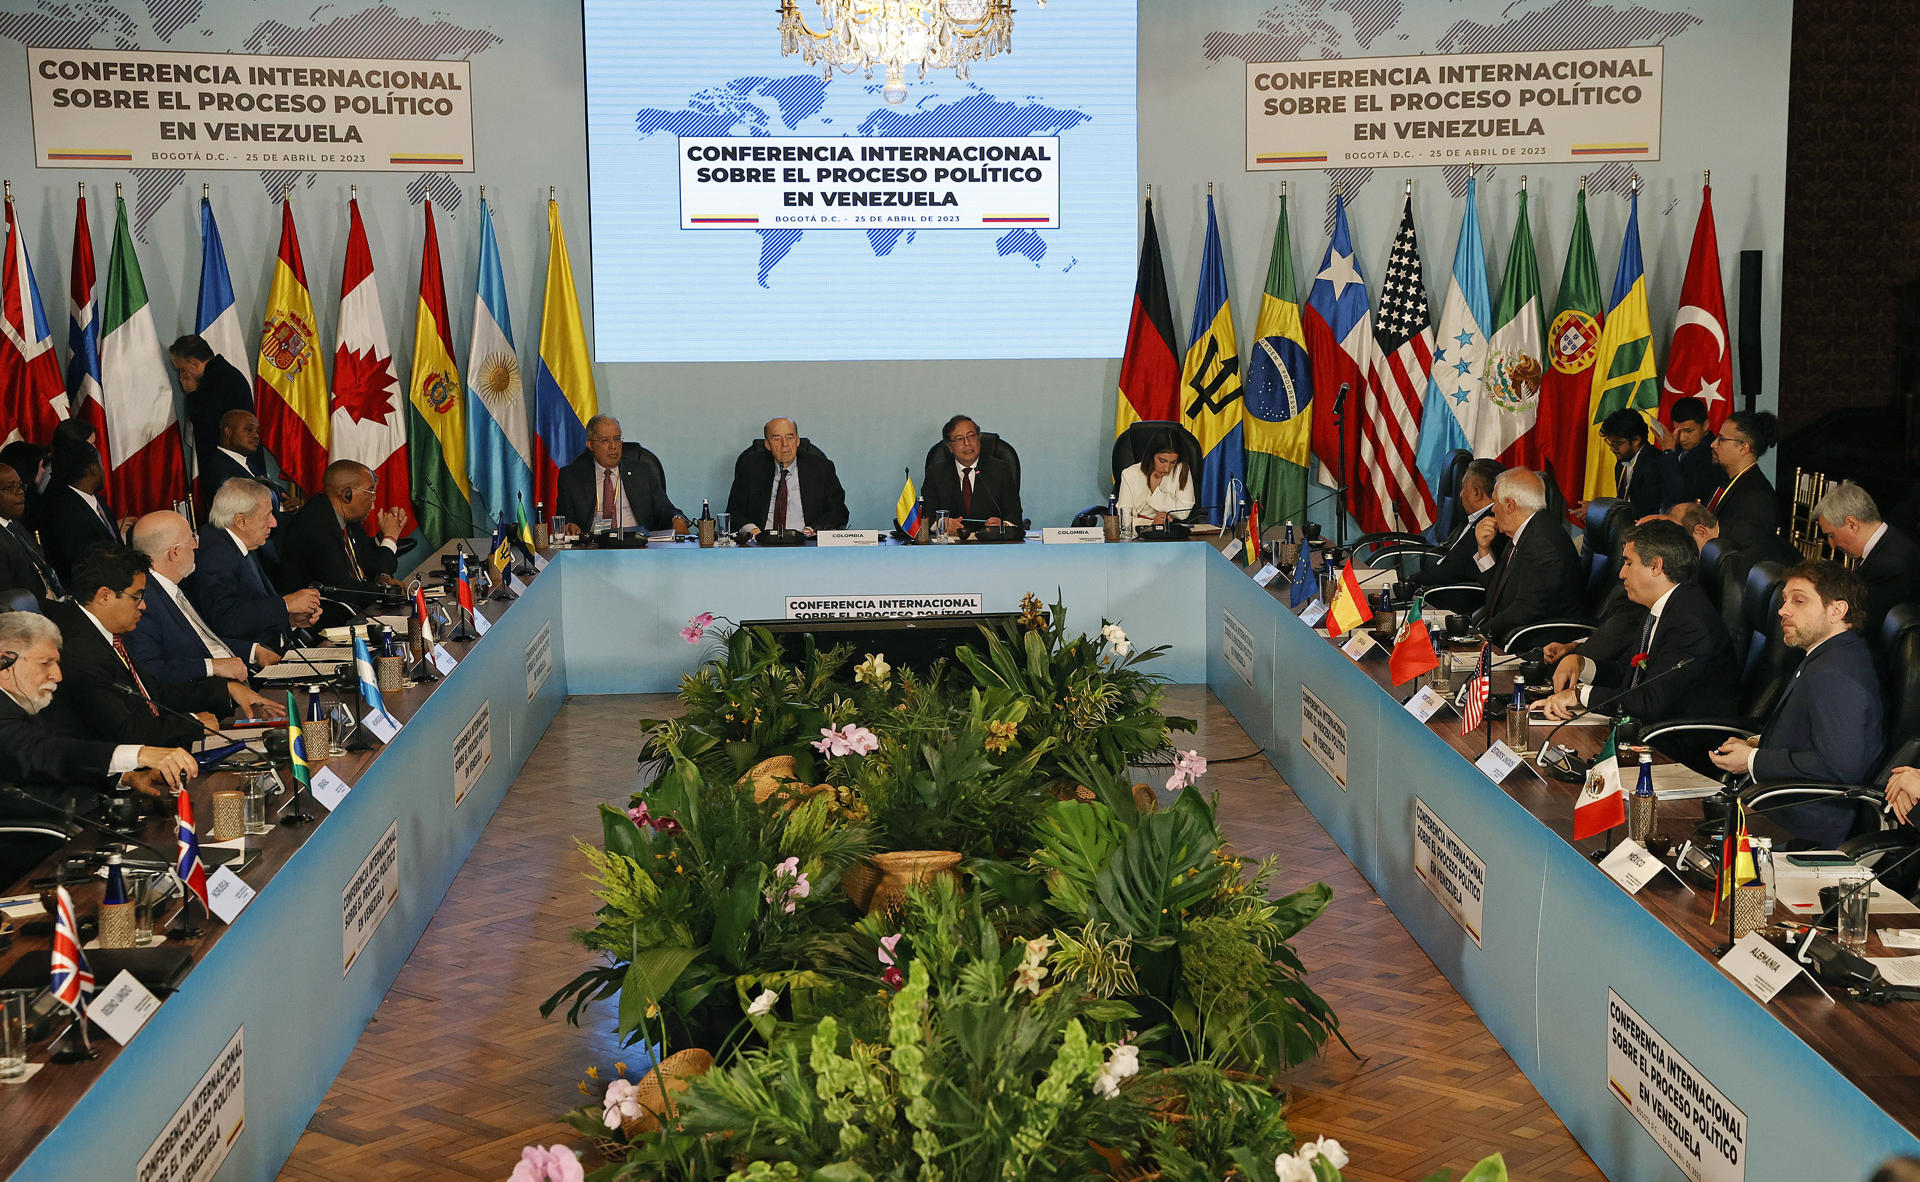 Expresidentes conservadores piden “no validar dictadura venezolana” en cumbre